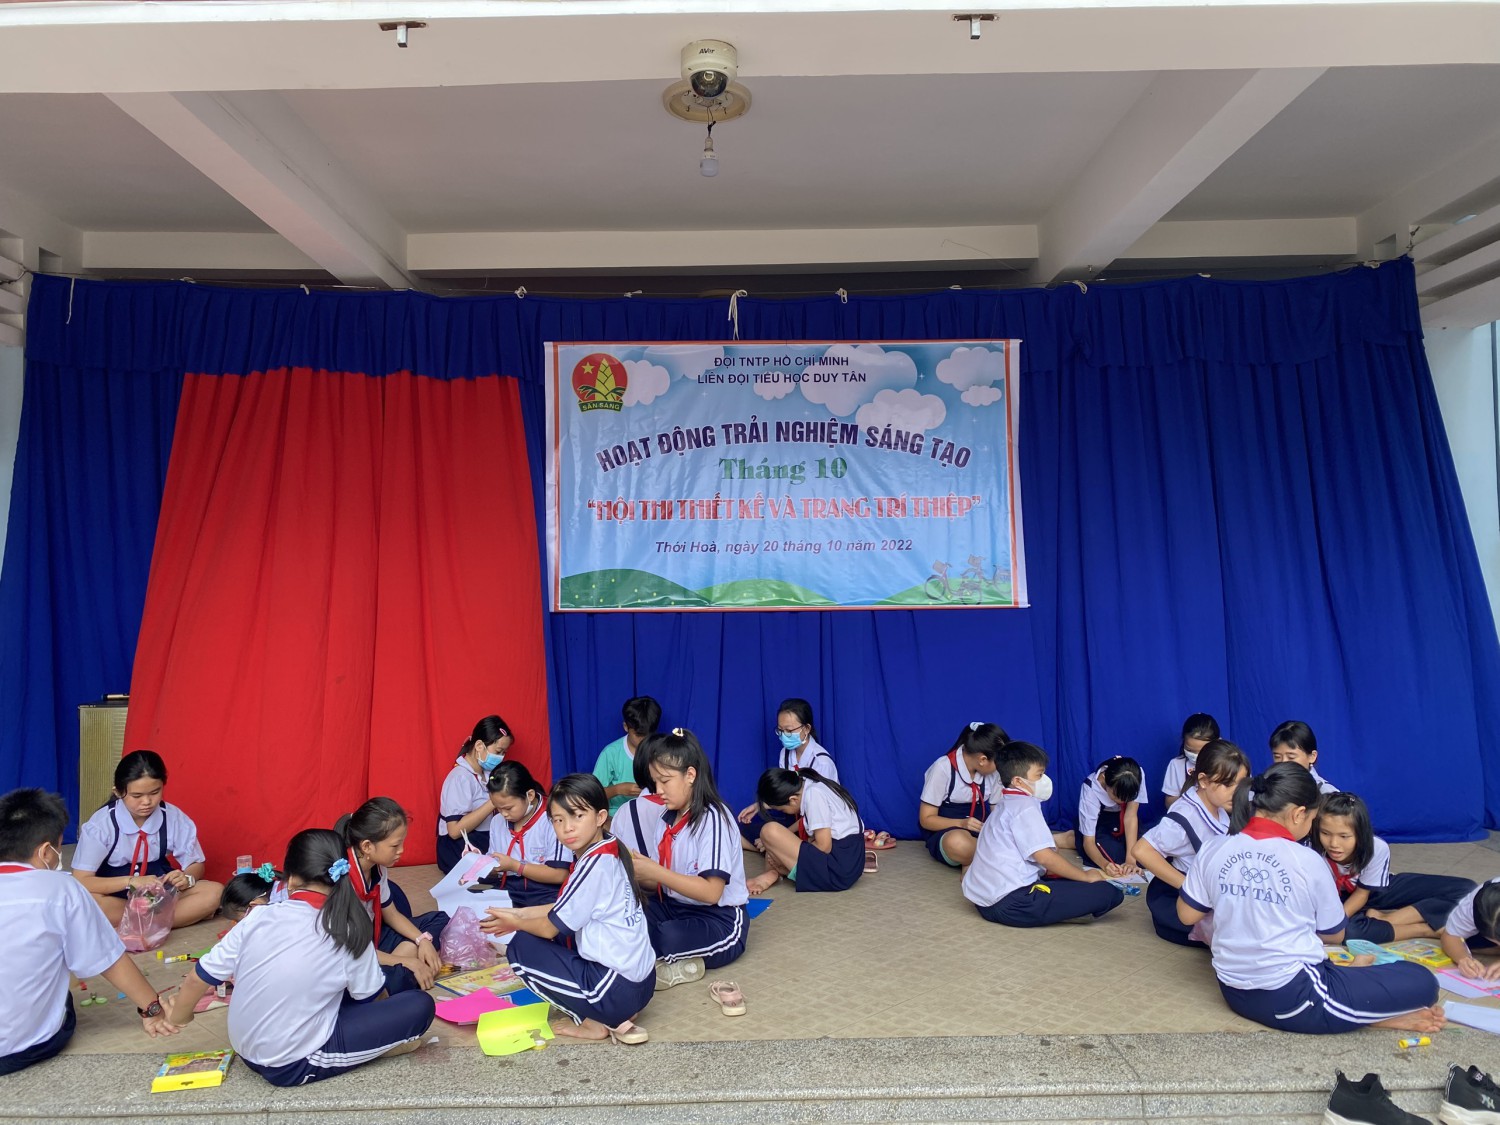 Liên đội Tiểu học Duy Tân tổ chức hoạt động trải nghiệm sáng tạo